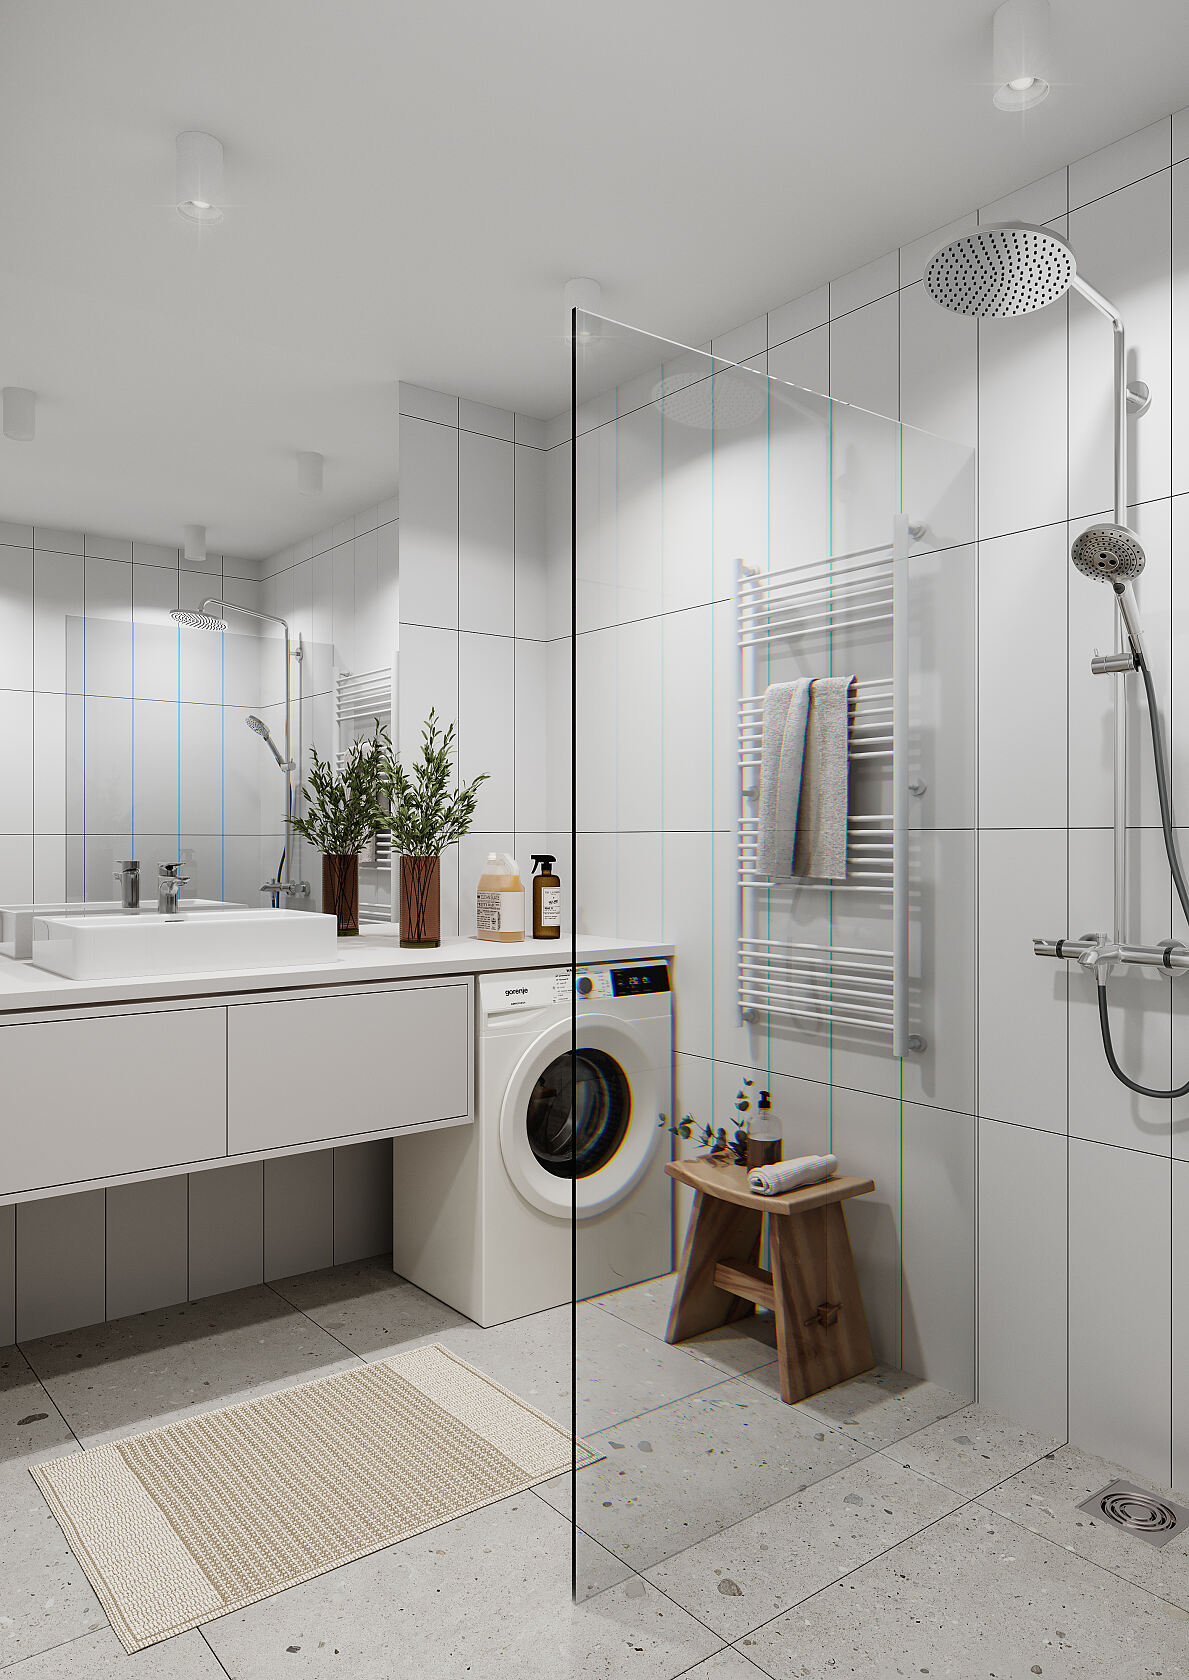 Modernes Badezimmer mit Rainshower-Dusche: Akzente von Premium-Qualität, wie großflächige Bodenfliesen und Rainshower, heben diese Wohnungen von anderen Projekten ab